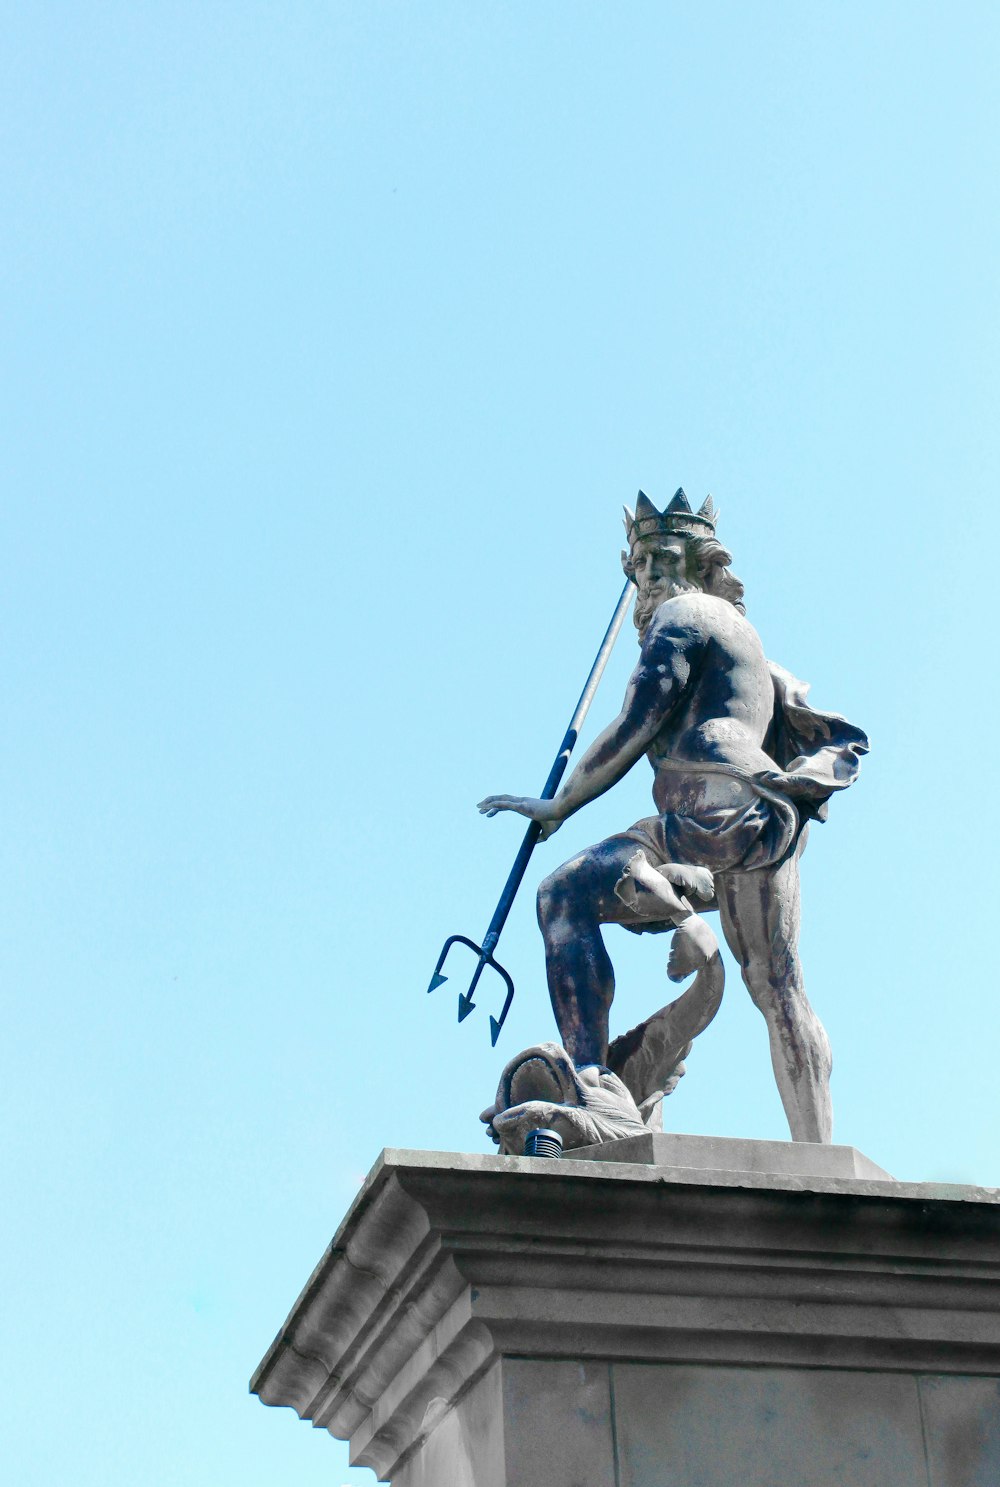 Statua del cavallo dell'uomo che cavalca sotto il cielo blu durante il giorno